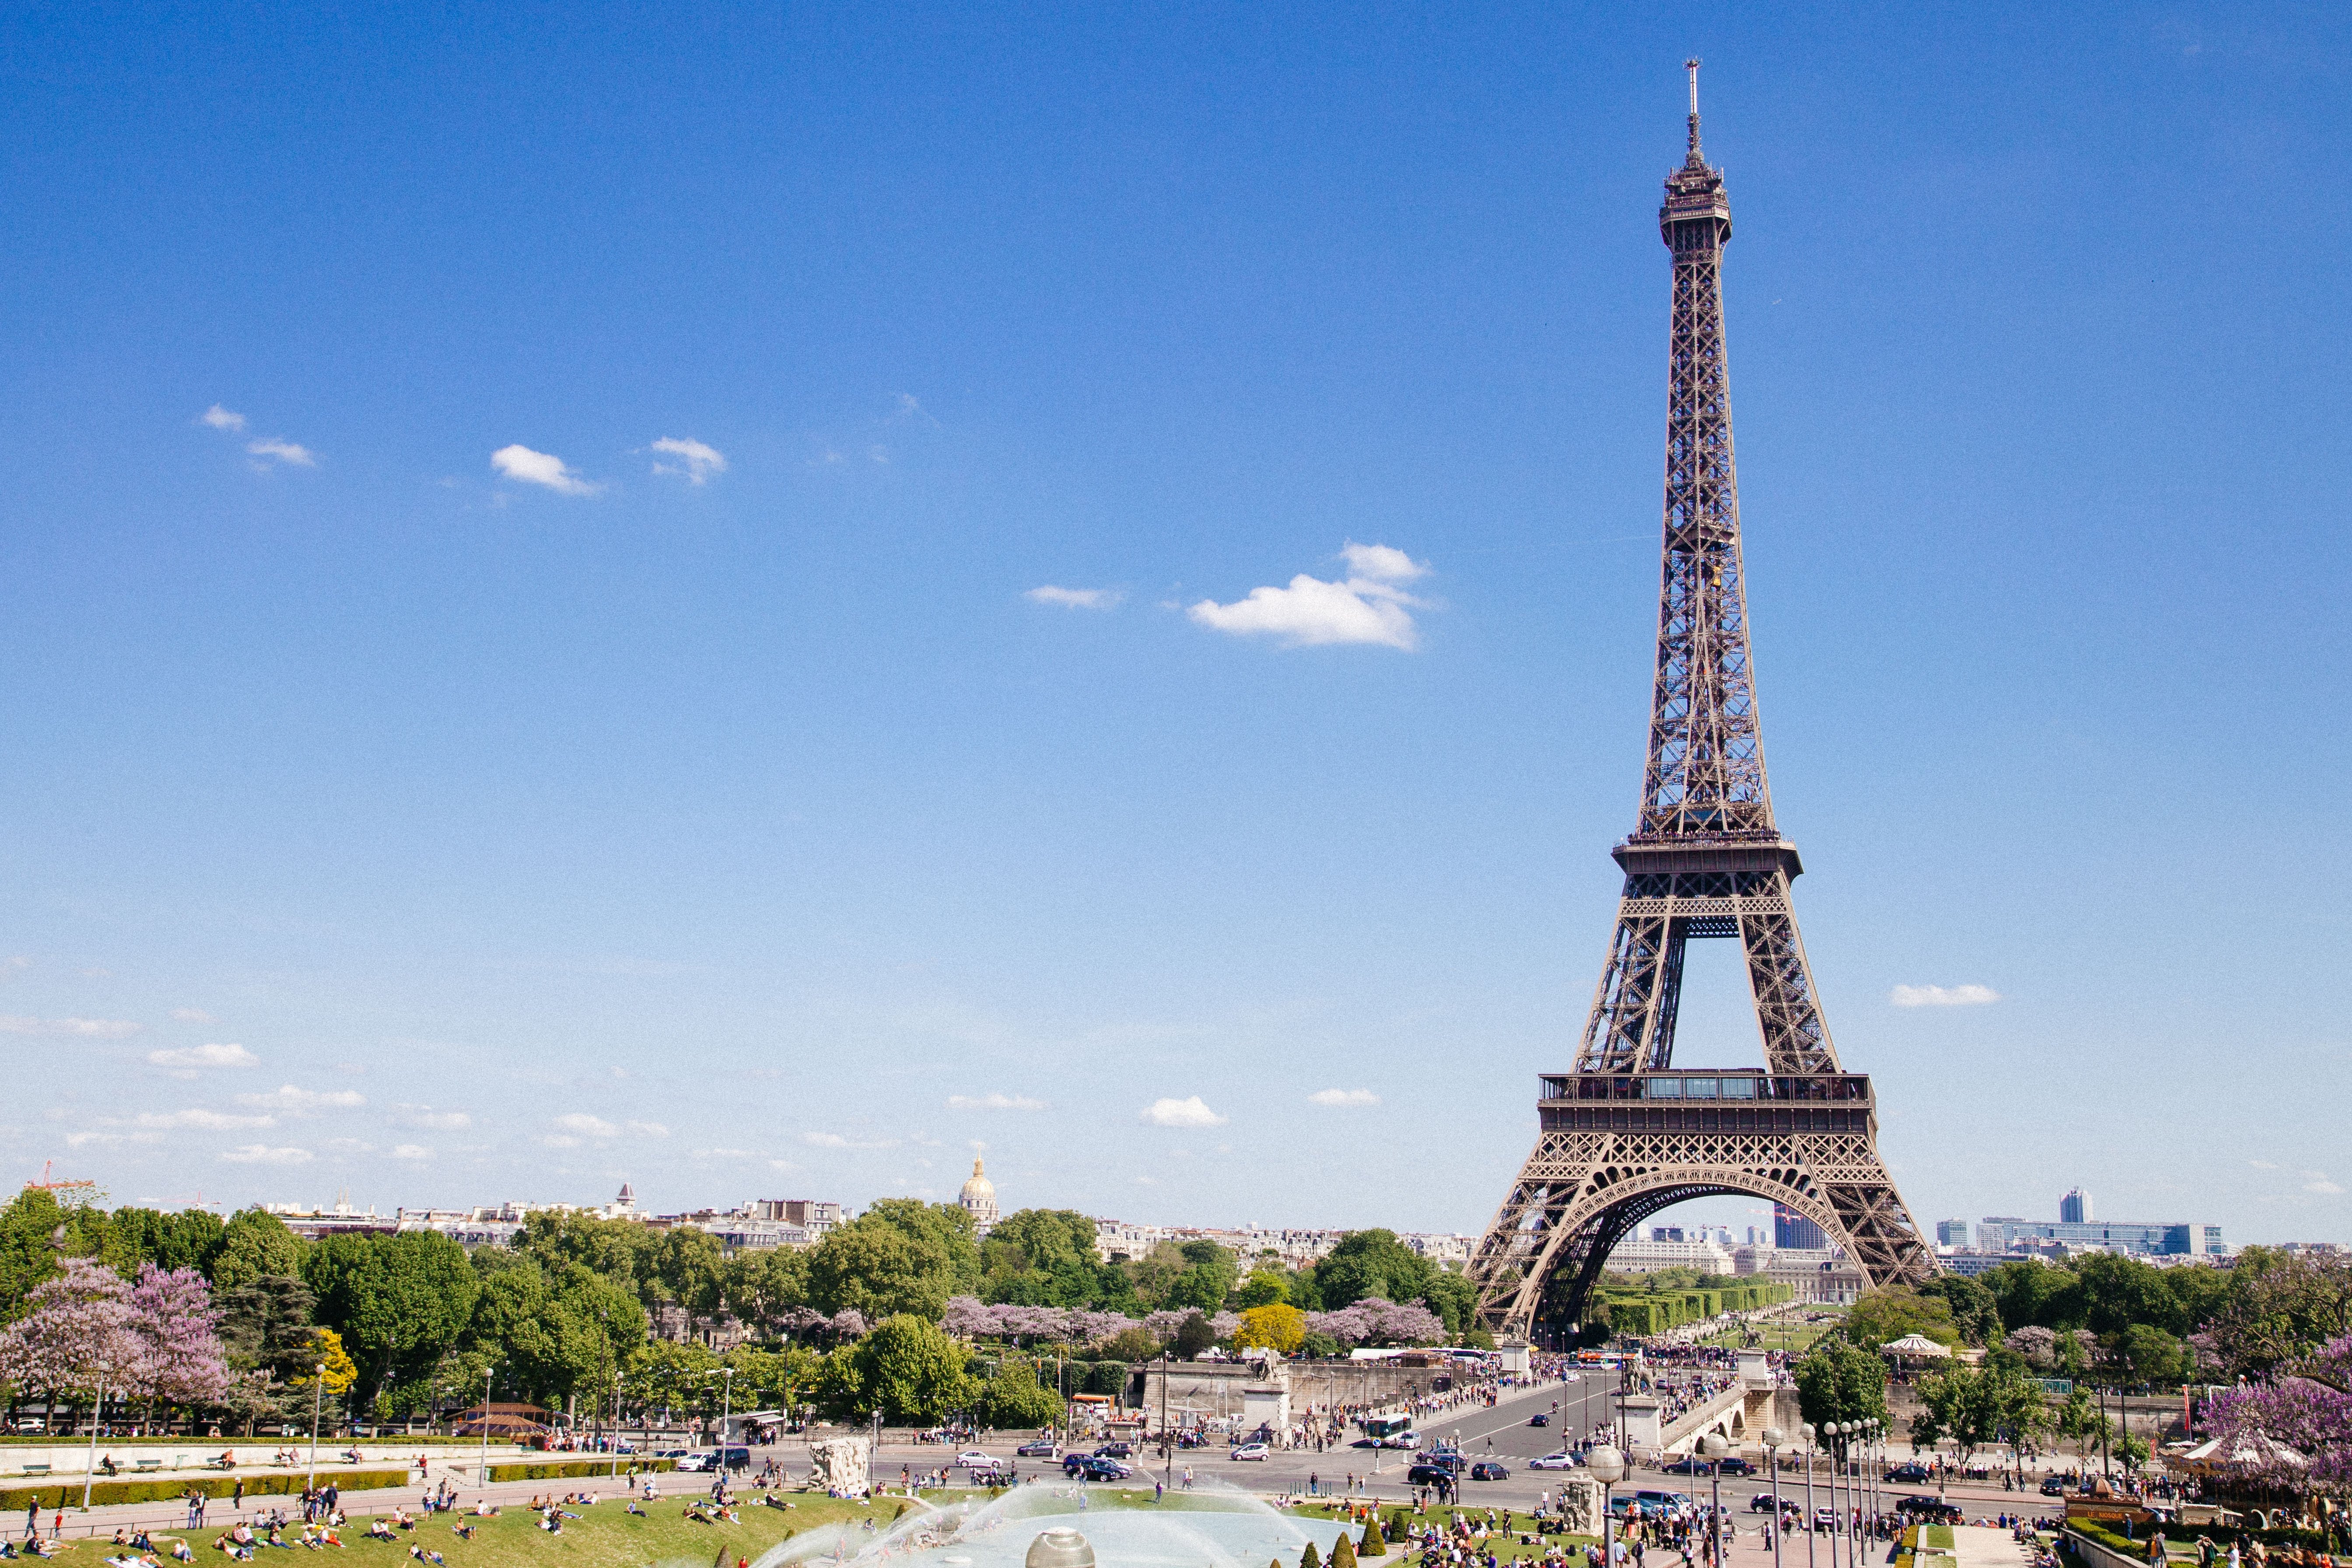 Zastaki.com - Красивый вид на знаменитую Эйфелеву башню под голубым небом, Париж 